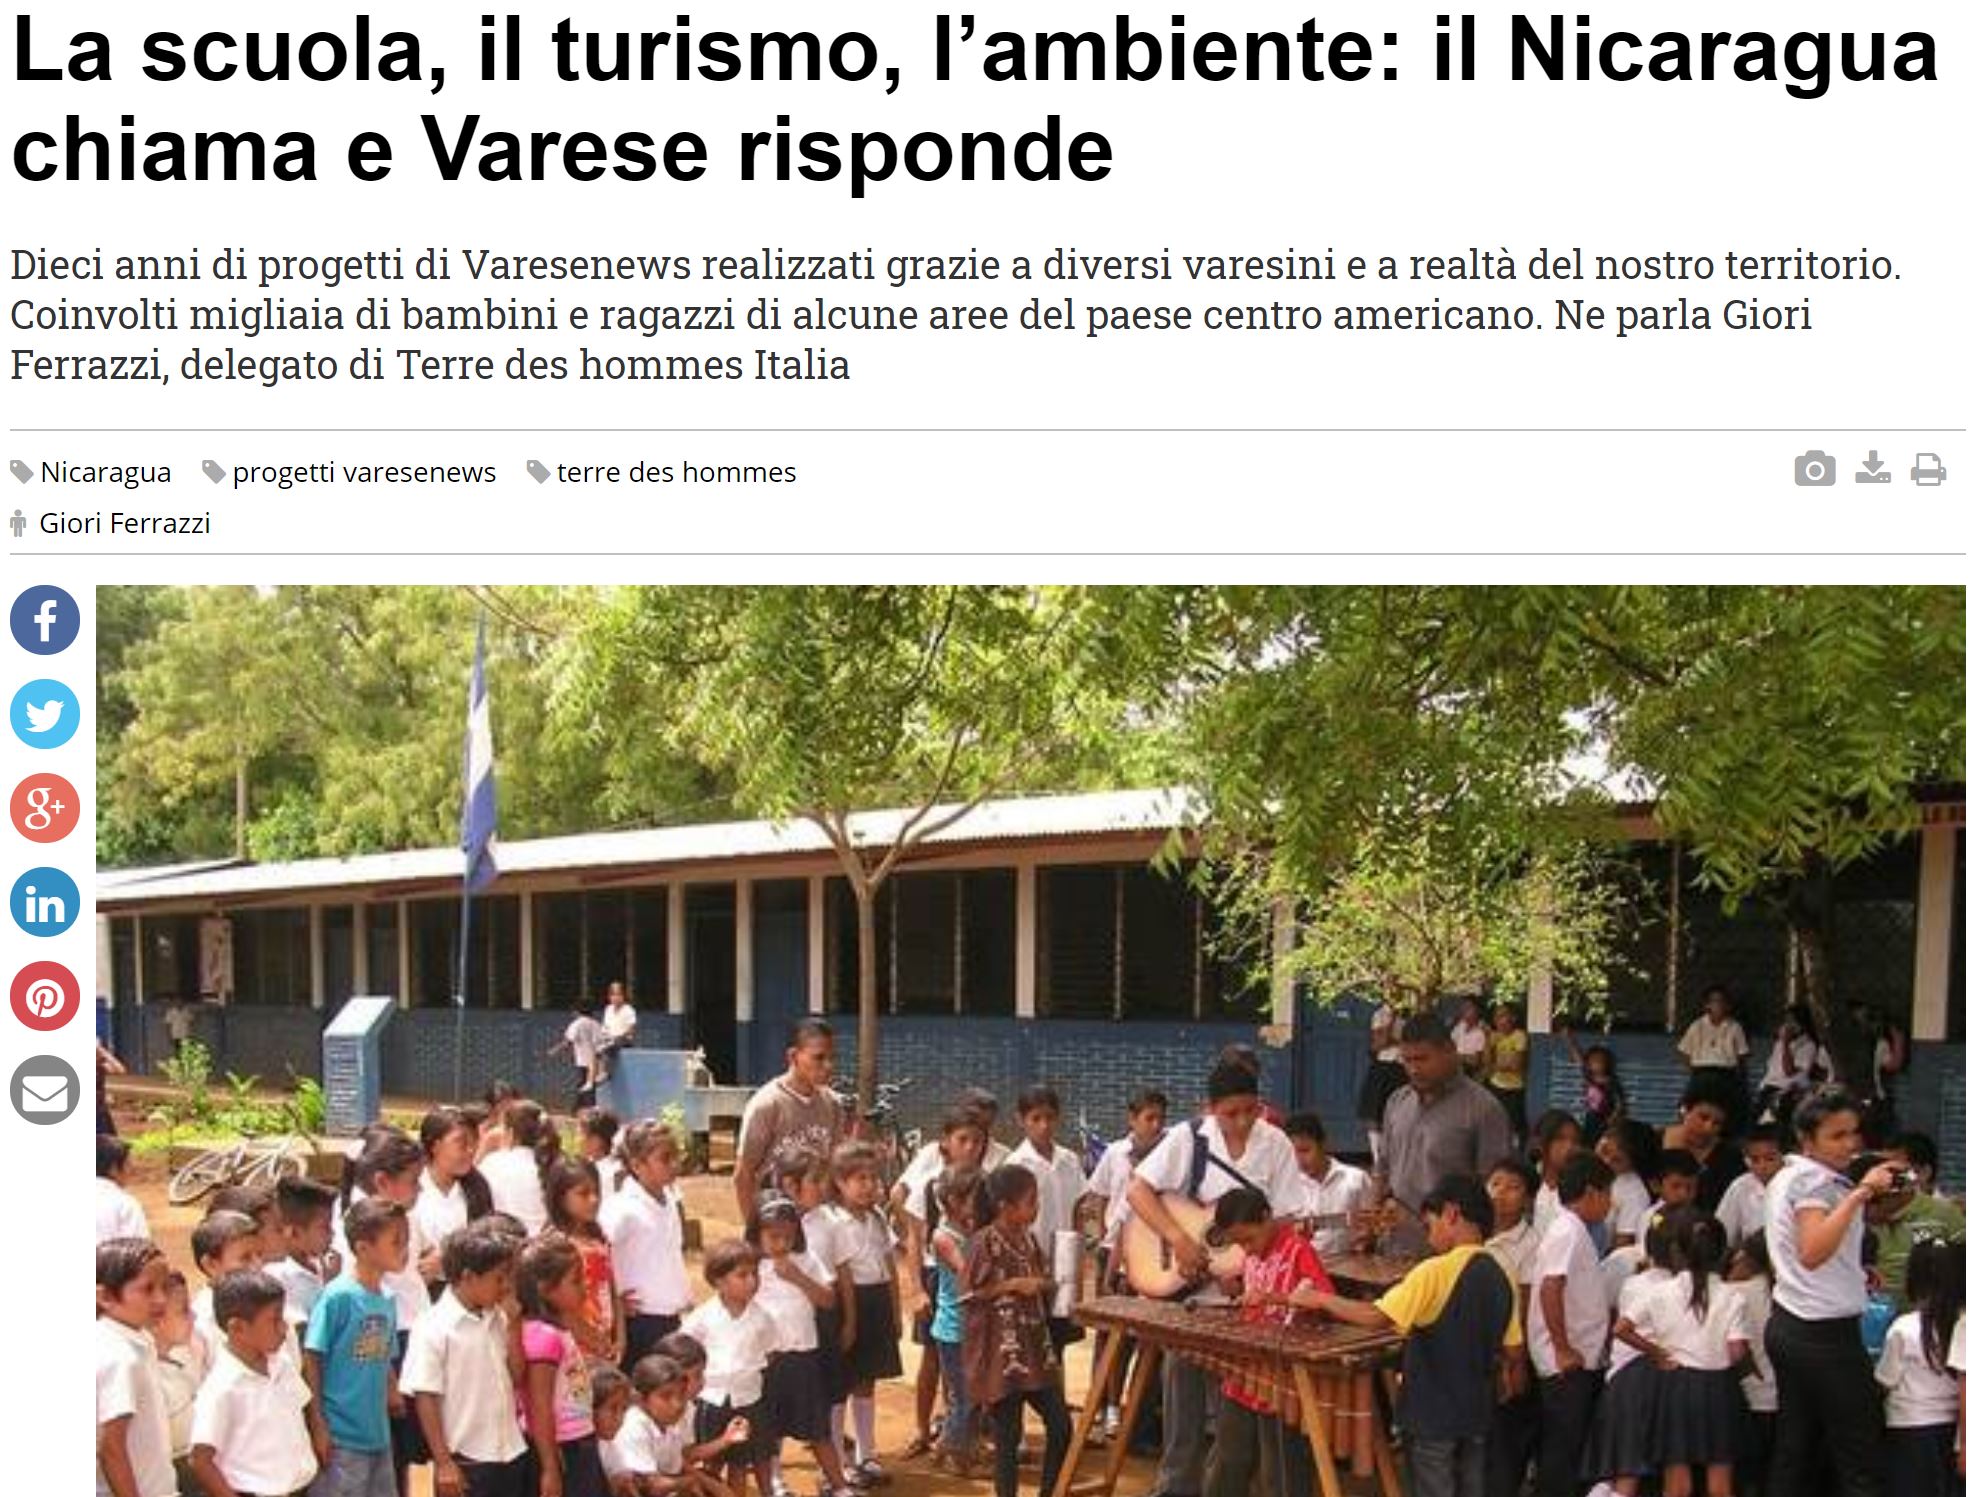 Nicaragua en espacios internacionales